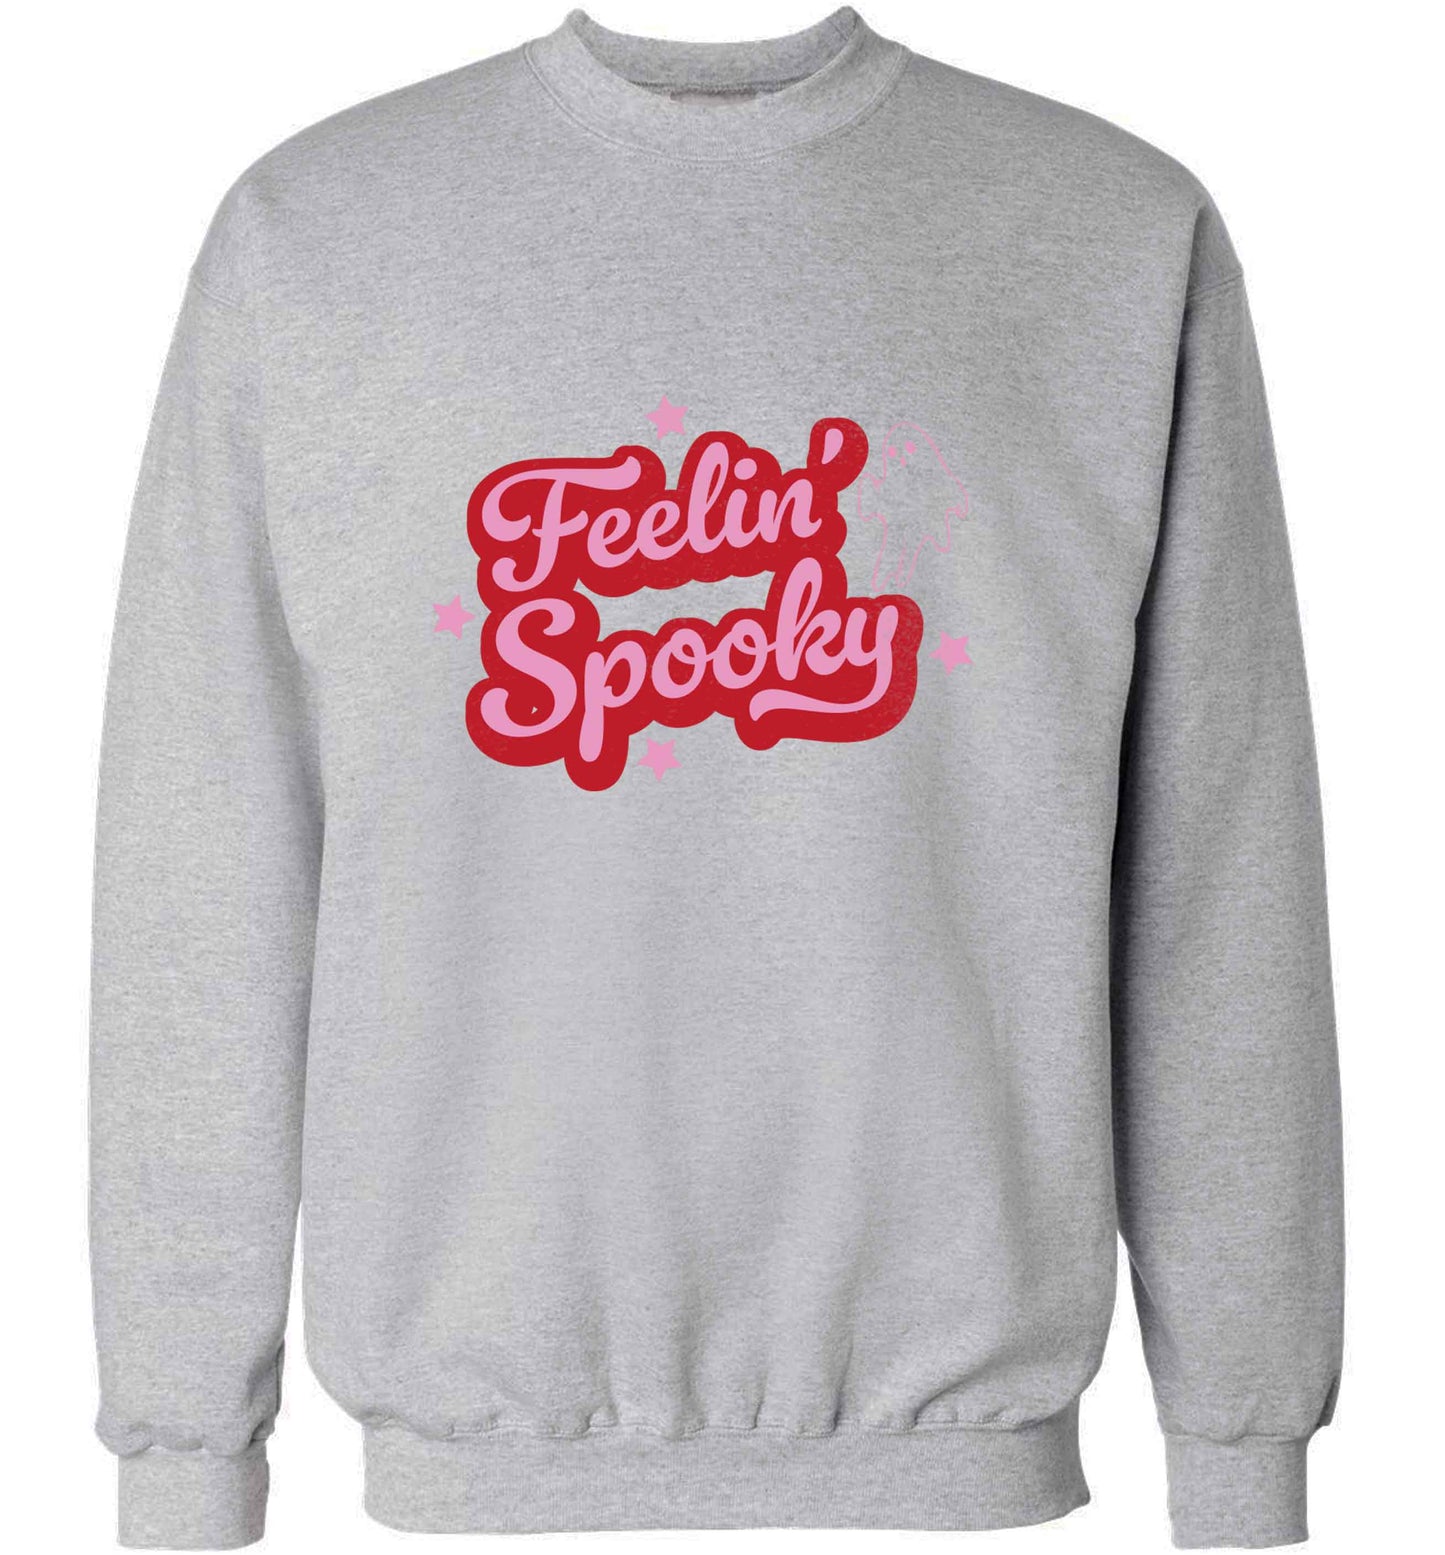 Feelin' Spooky Kit adult's unisex grey sweater 2XL